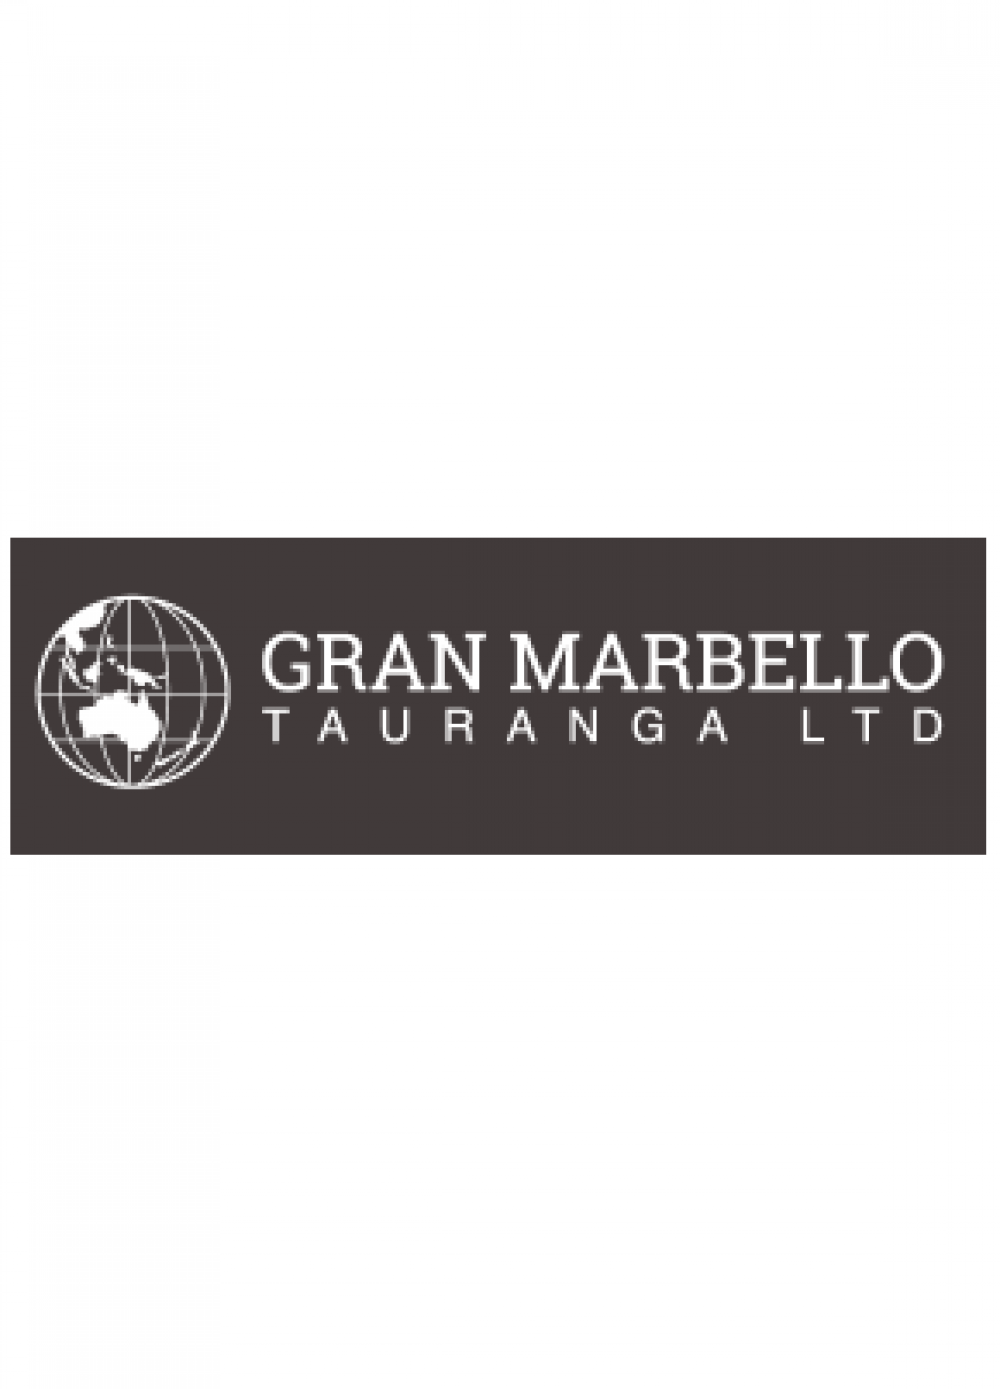 Gran Marbello Tauranga Most Trusted